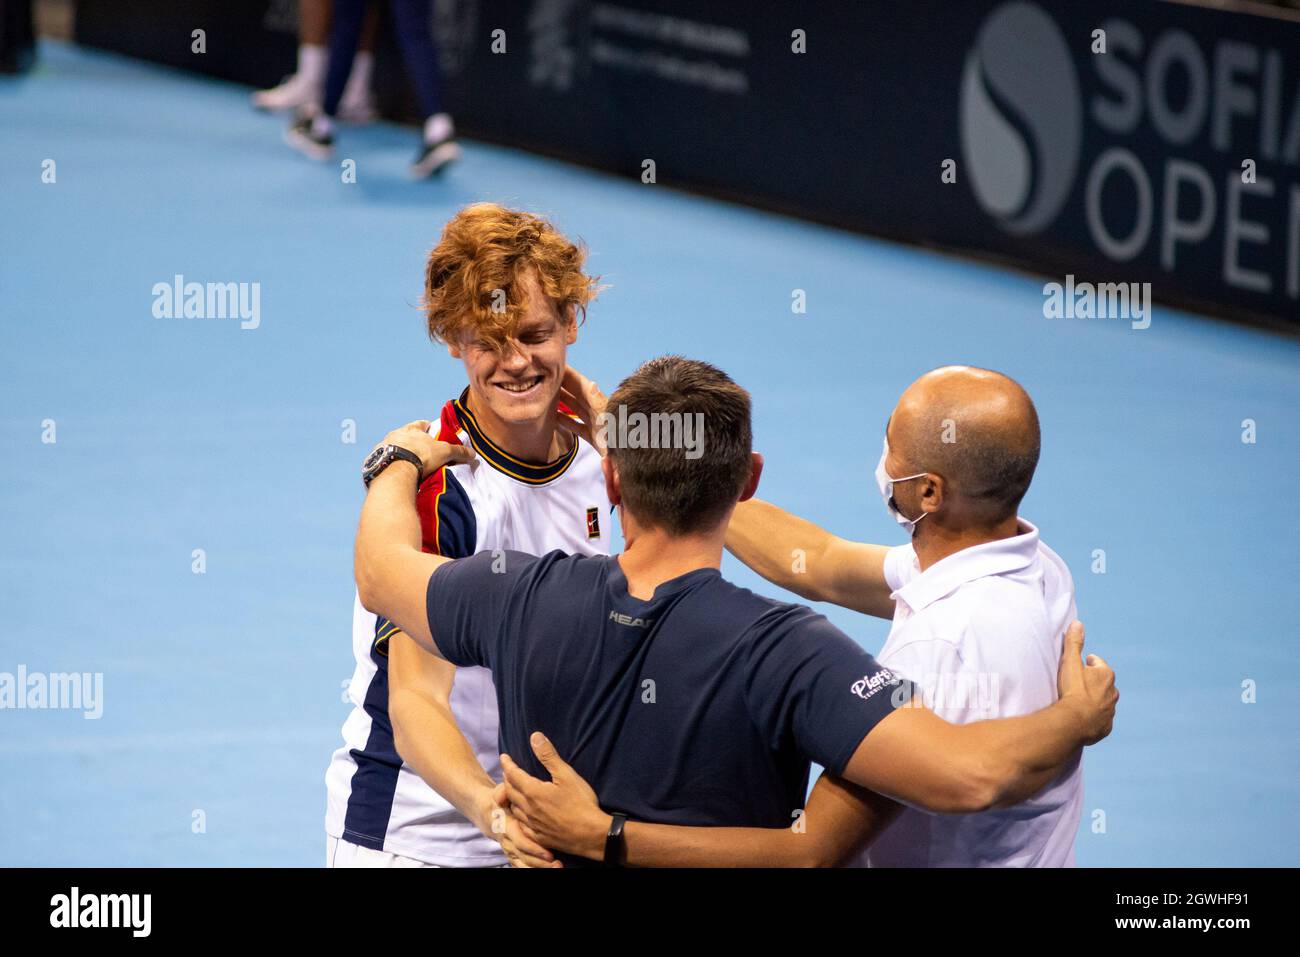 L'Italien Jannik Sinner célèbre avec son équipe comme vainqueur après la finale du tournoi de tennis en salle Sofia Open 2021 ATP 250. Sinner a gagné 6:3 6:4 contre Gael Monfils, de France. Alamy Live News Banque D'Images